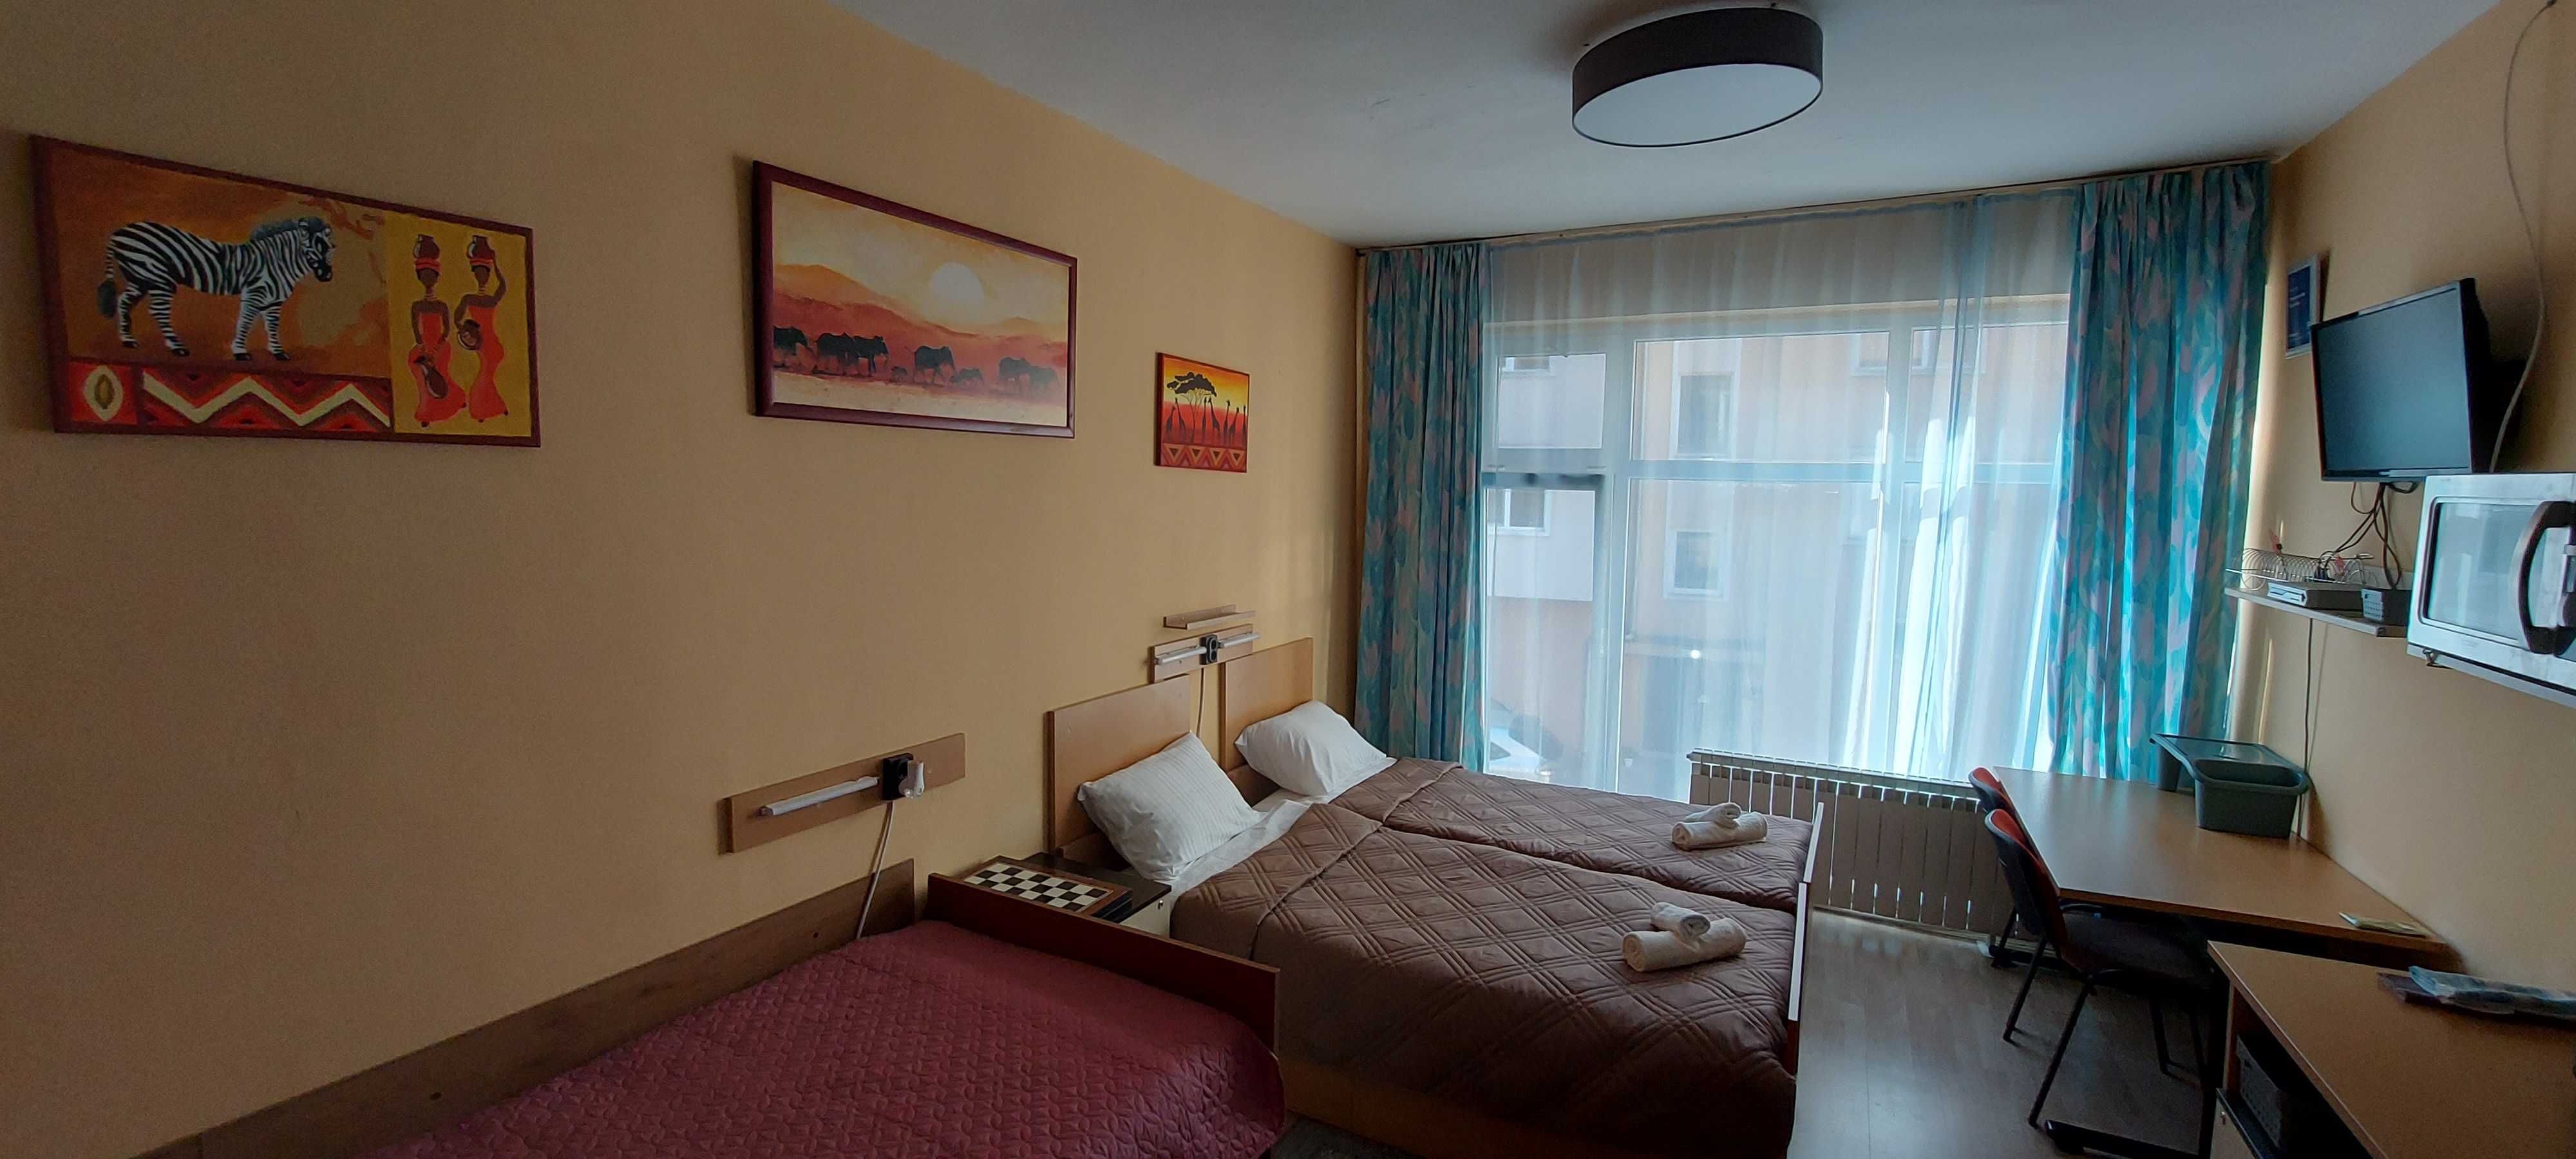 Нощувки в Нова Загора (къща за гости, стаи за гости и апартамент)